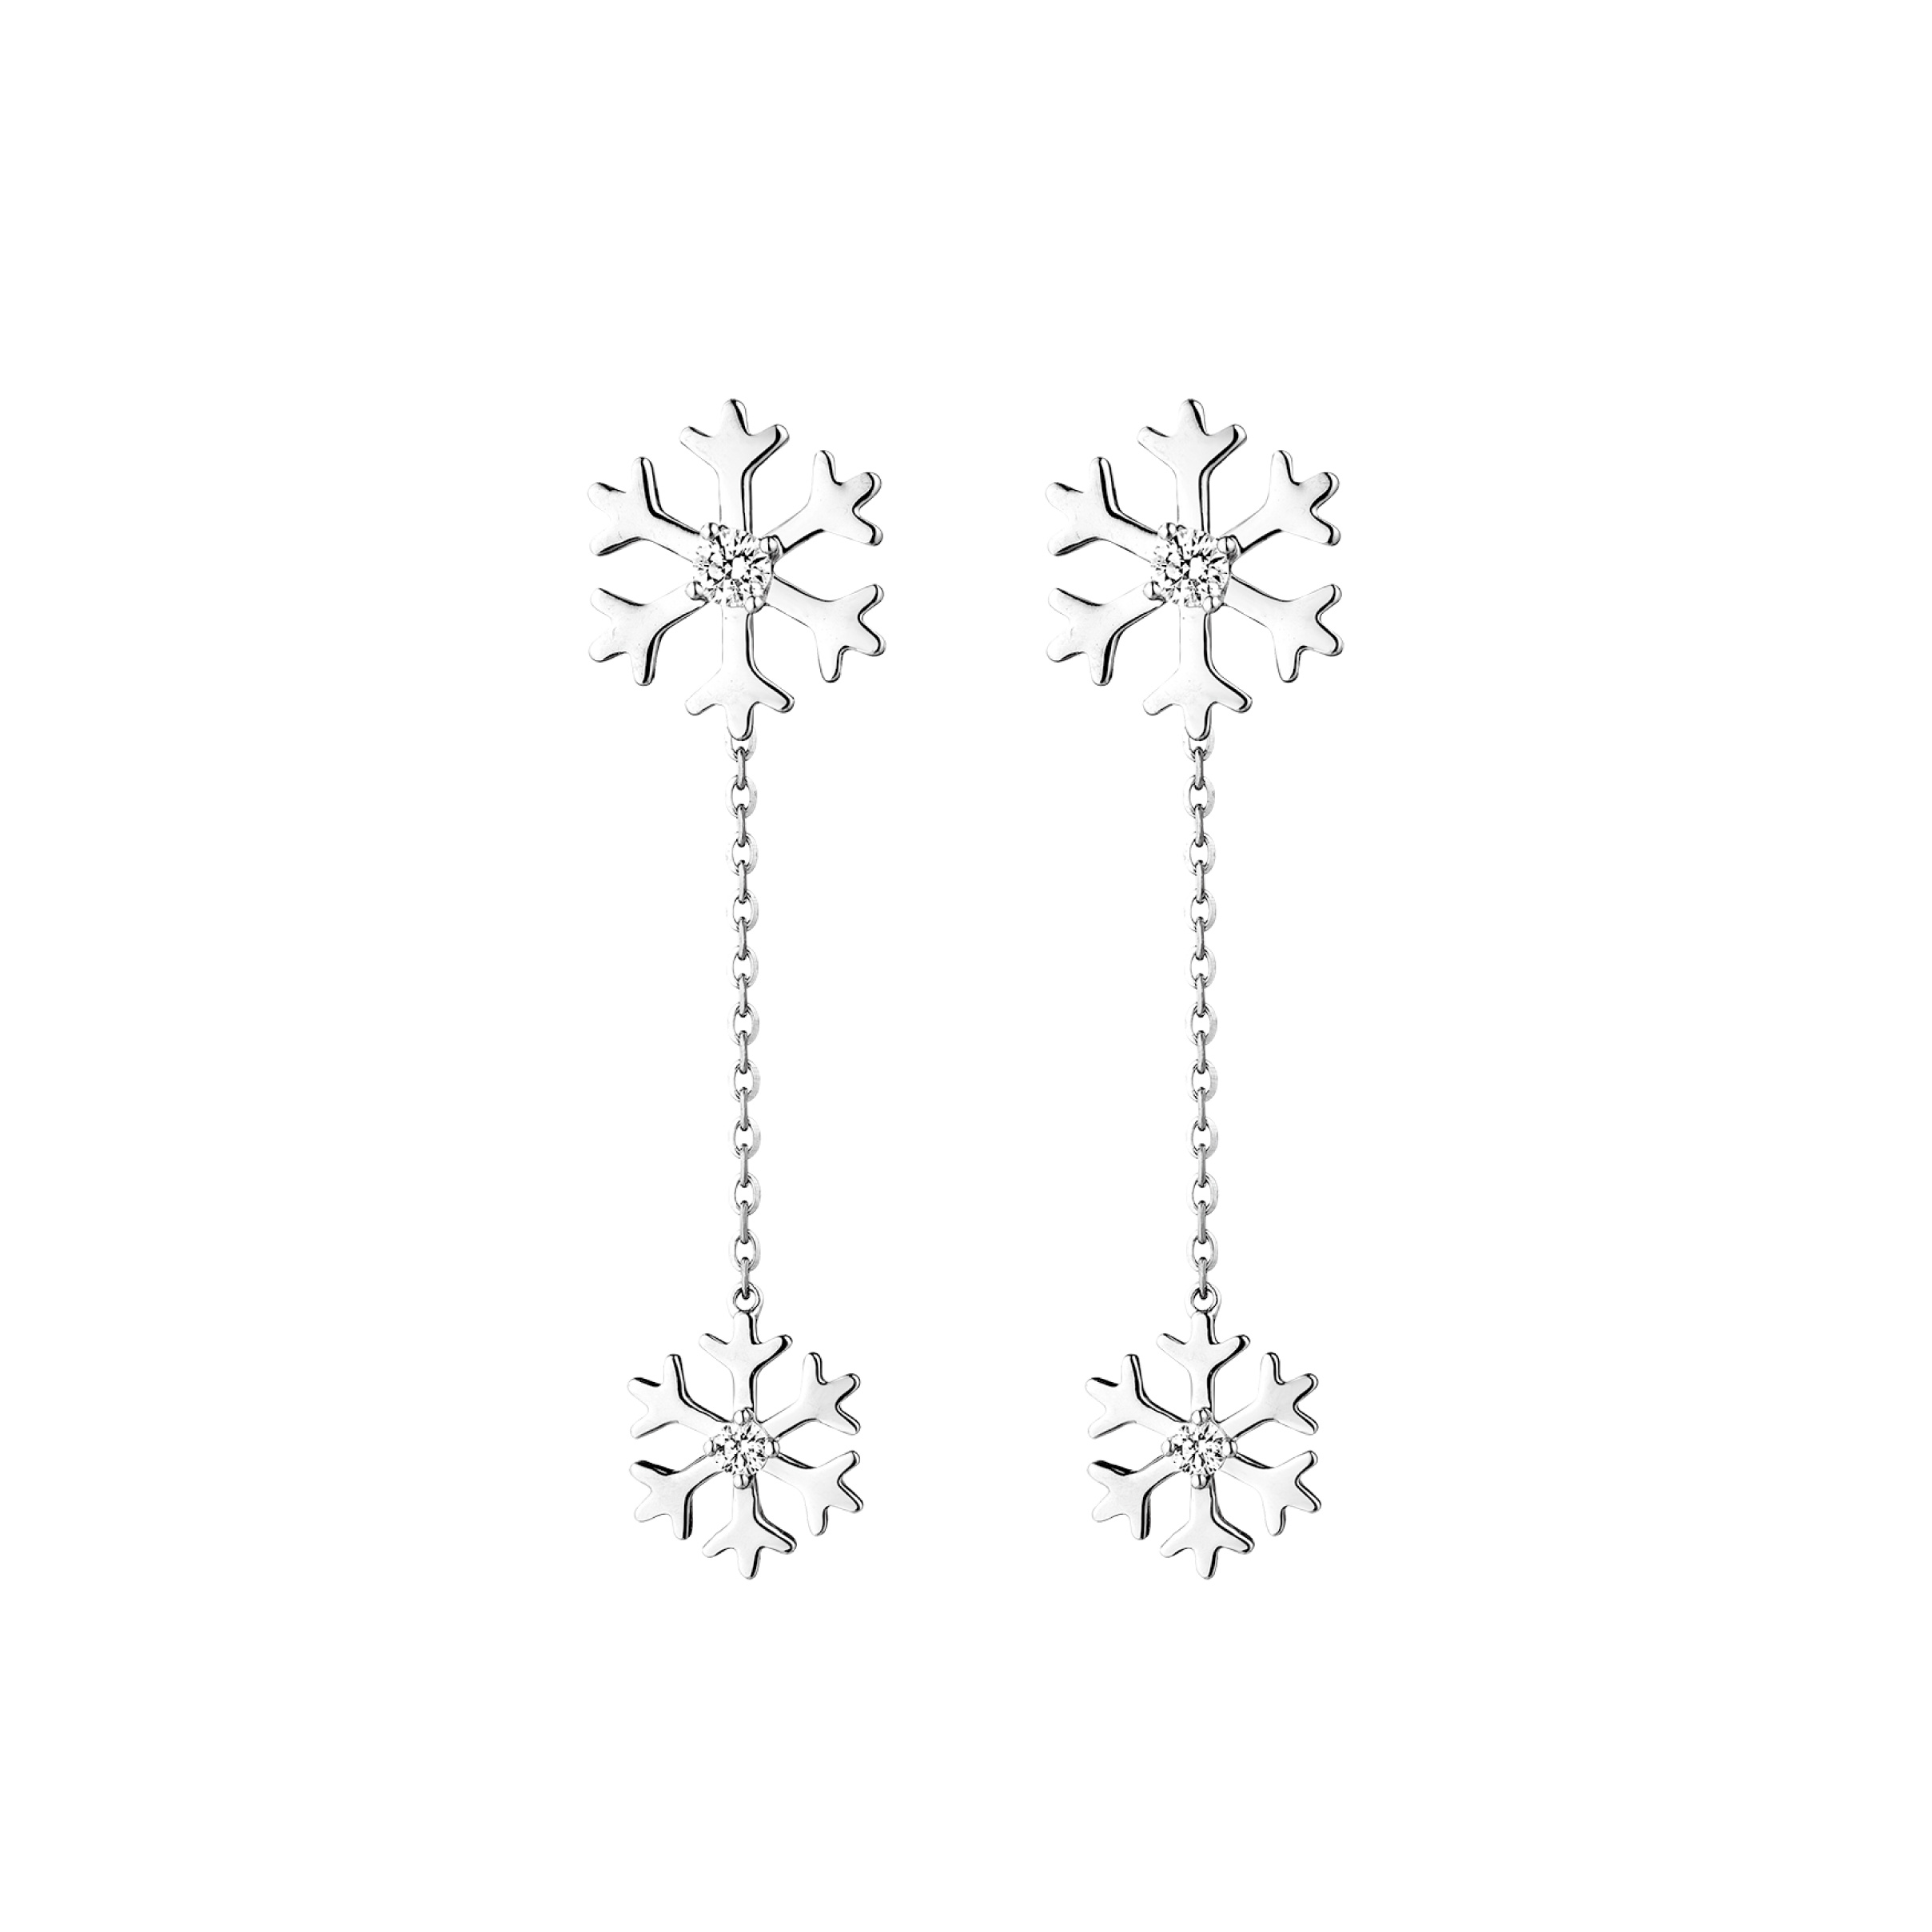 Dear Q“Love of Snowy” Earrings